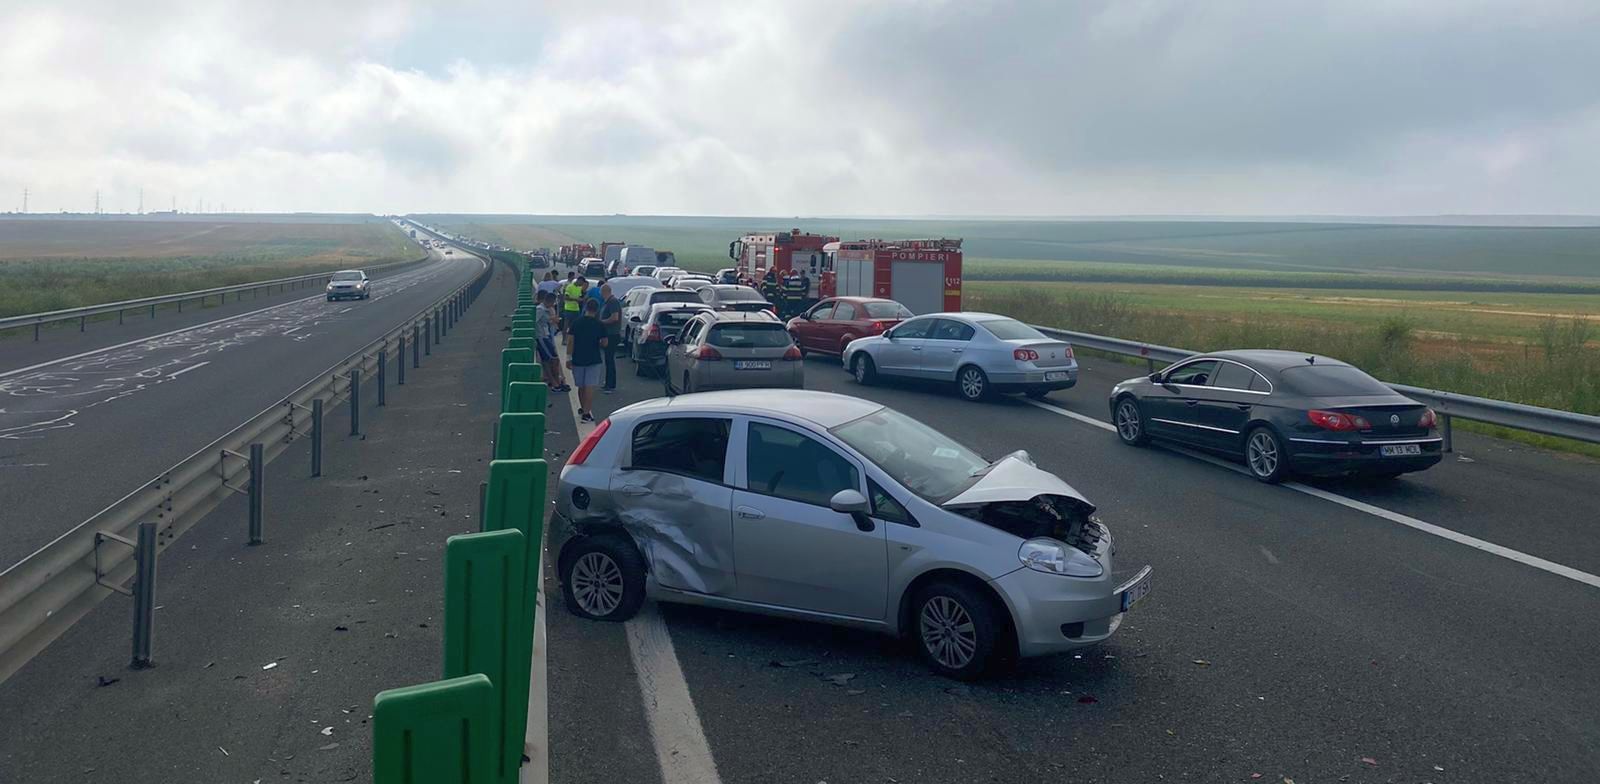 Românii nu știu să conducă pe autostradă! 4 reguli care ne pot salva viața